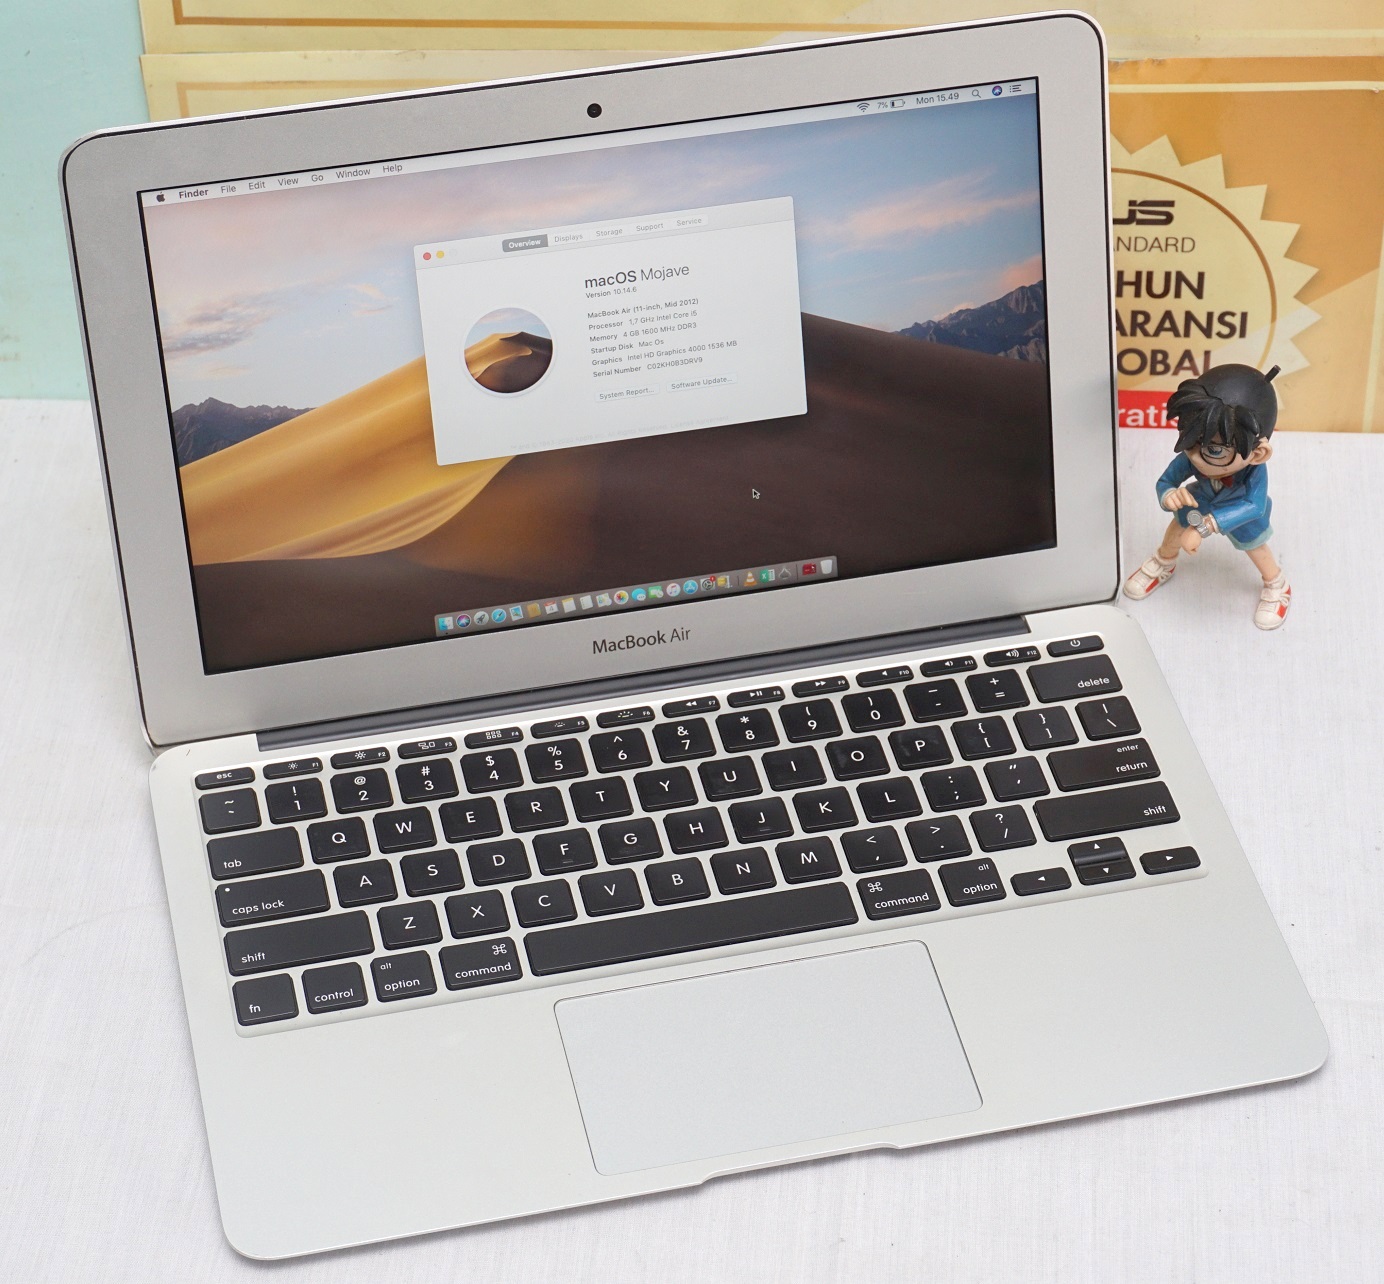 Jual Macbook Air 11 Core i5 Mid 2012 Bekas | Jual Beli ...